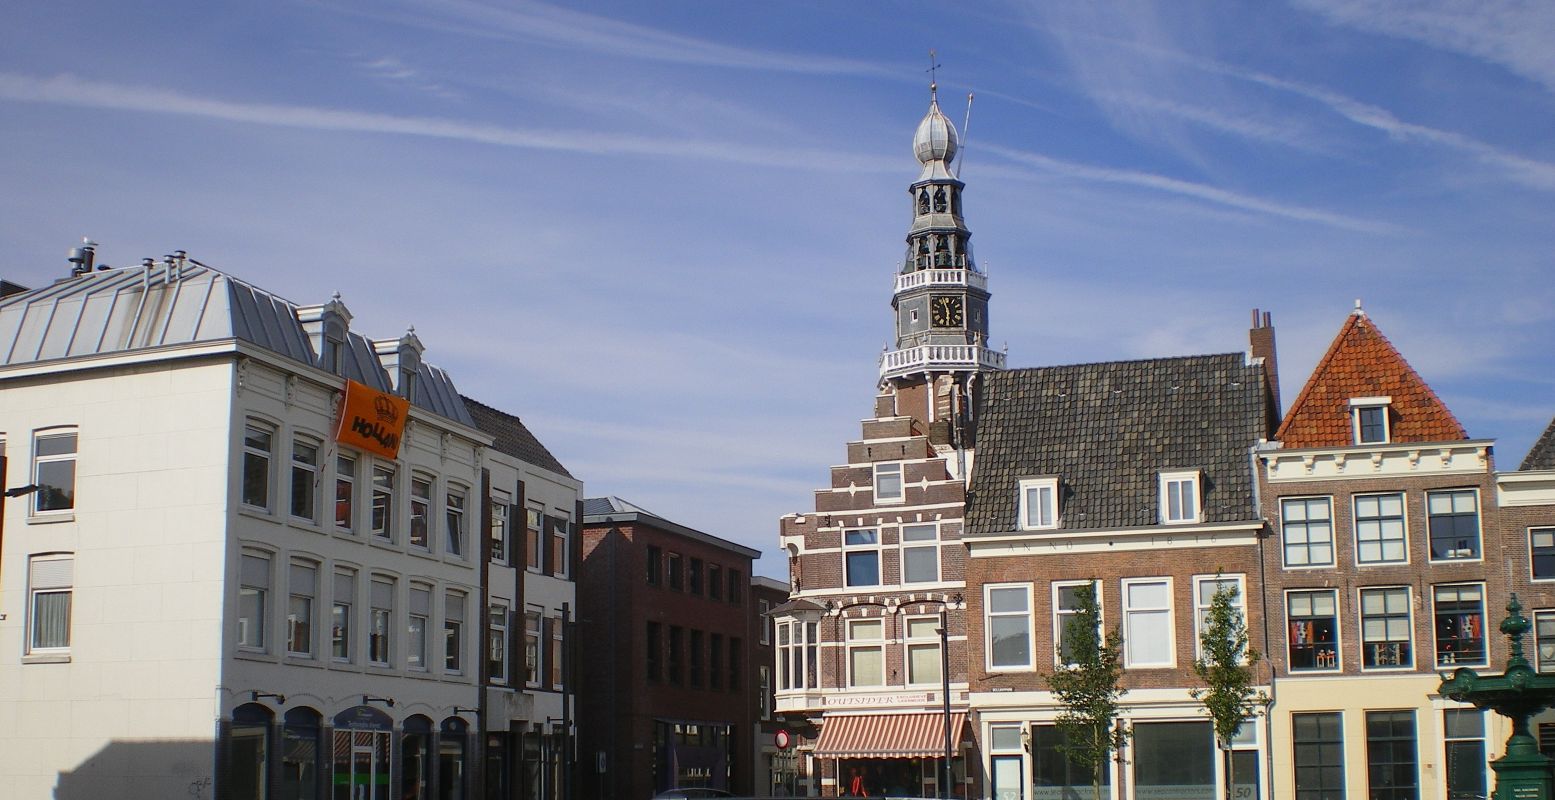 Winkel in pittoresque straatjes met historische geveltjes richting de Sint Jacobskerk, die boven alles uitsteekt. Foto: Henk Arendse